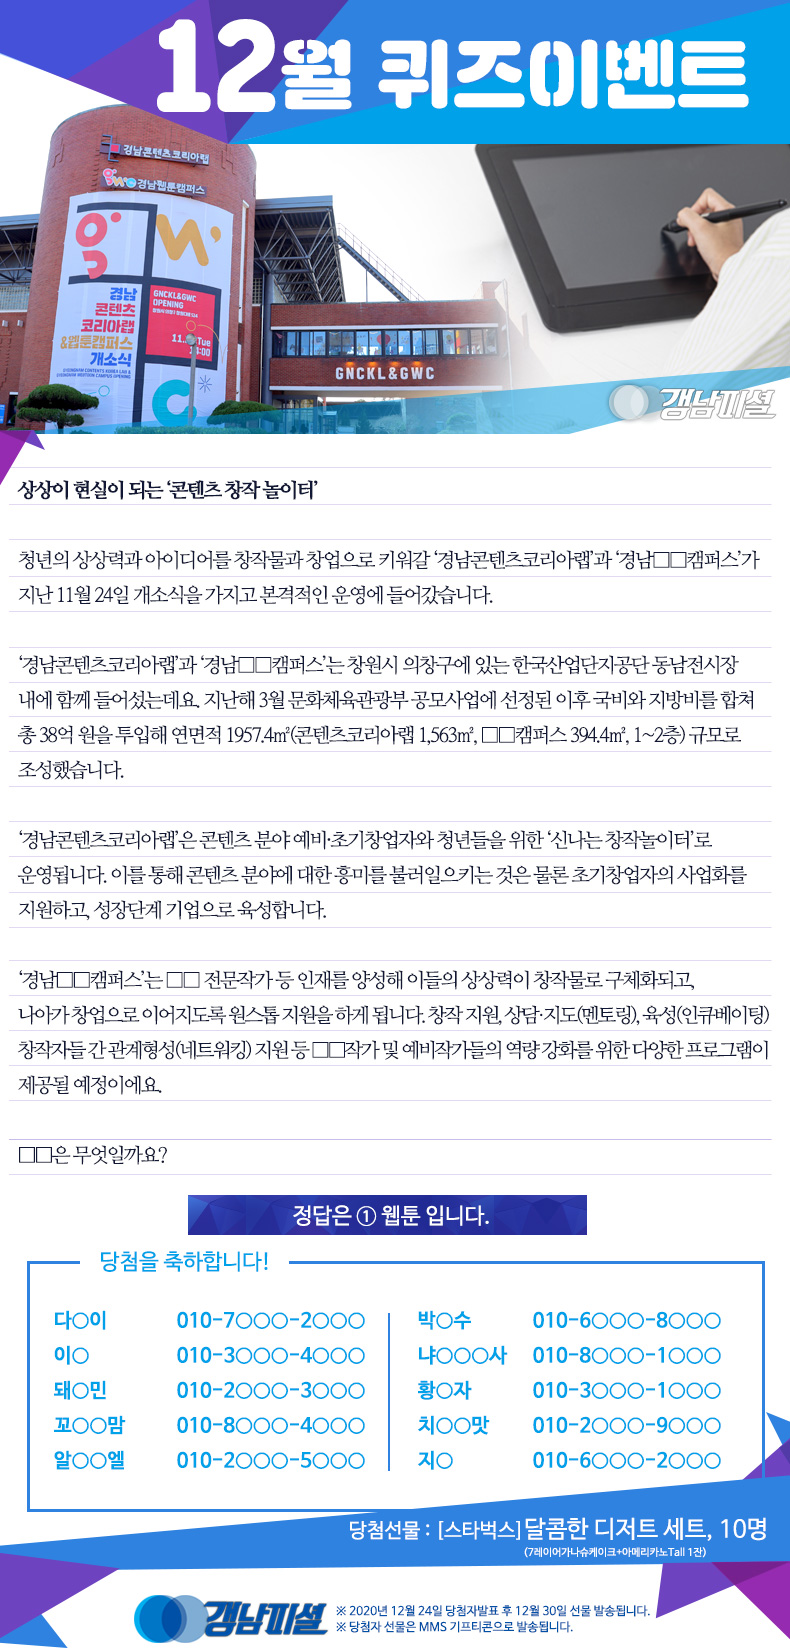 경남-인터넷뉴스-12월이벤트_당첨자발표